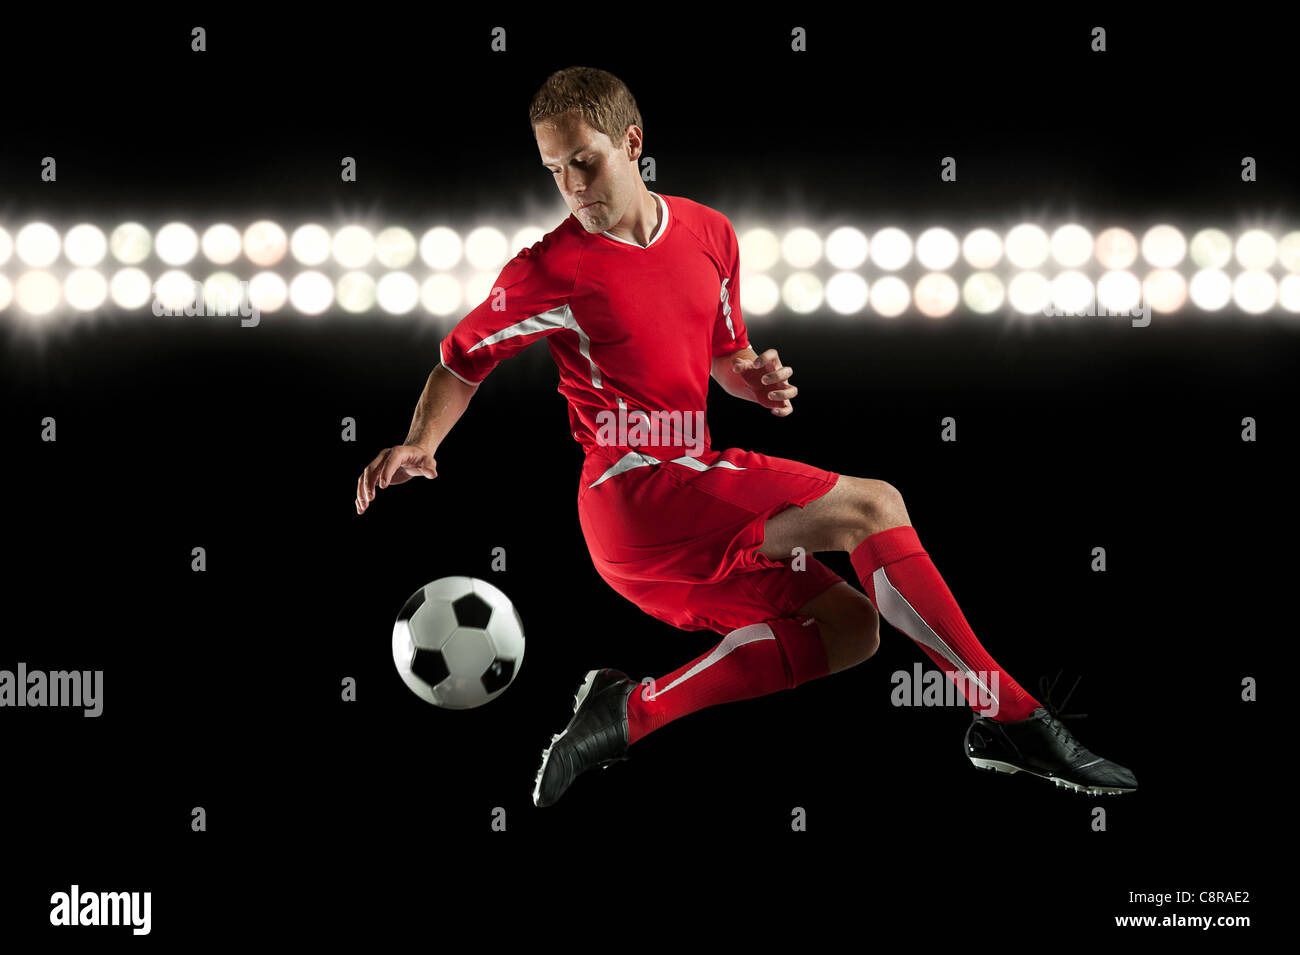 Jugador de fútbol saltando en mitad del aire chutar un balón en la noche Foto de stock